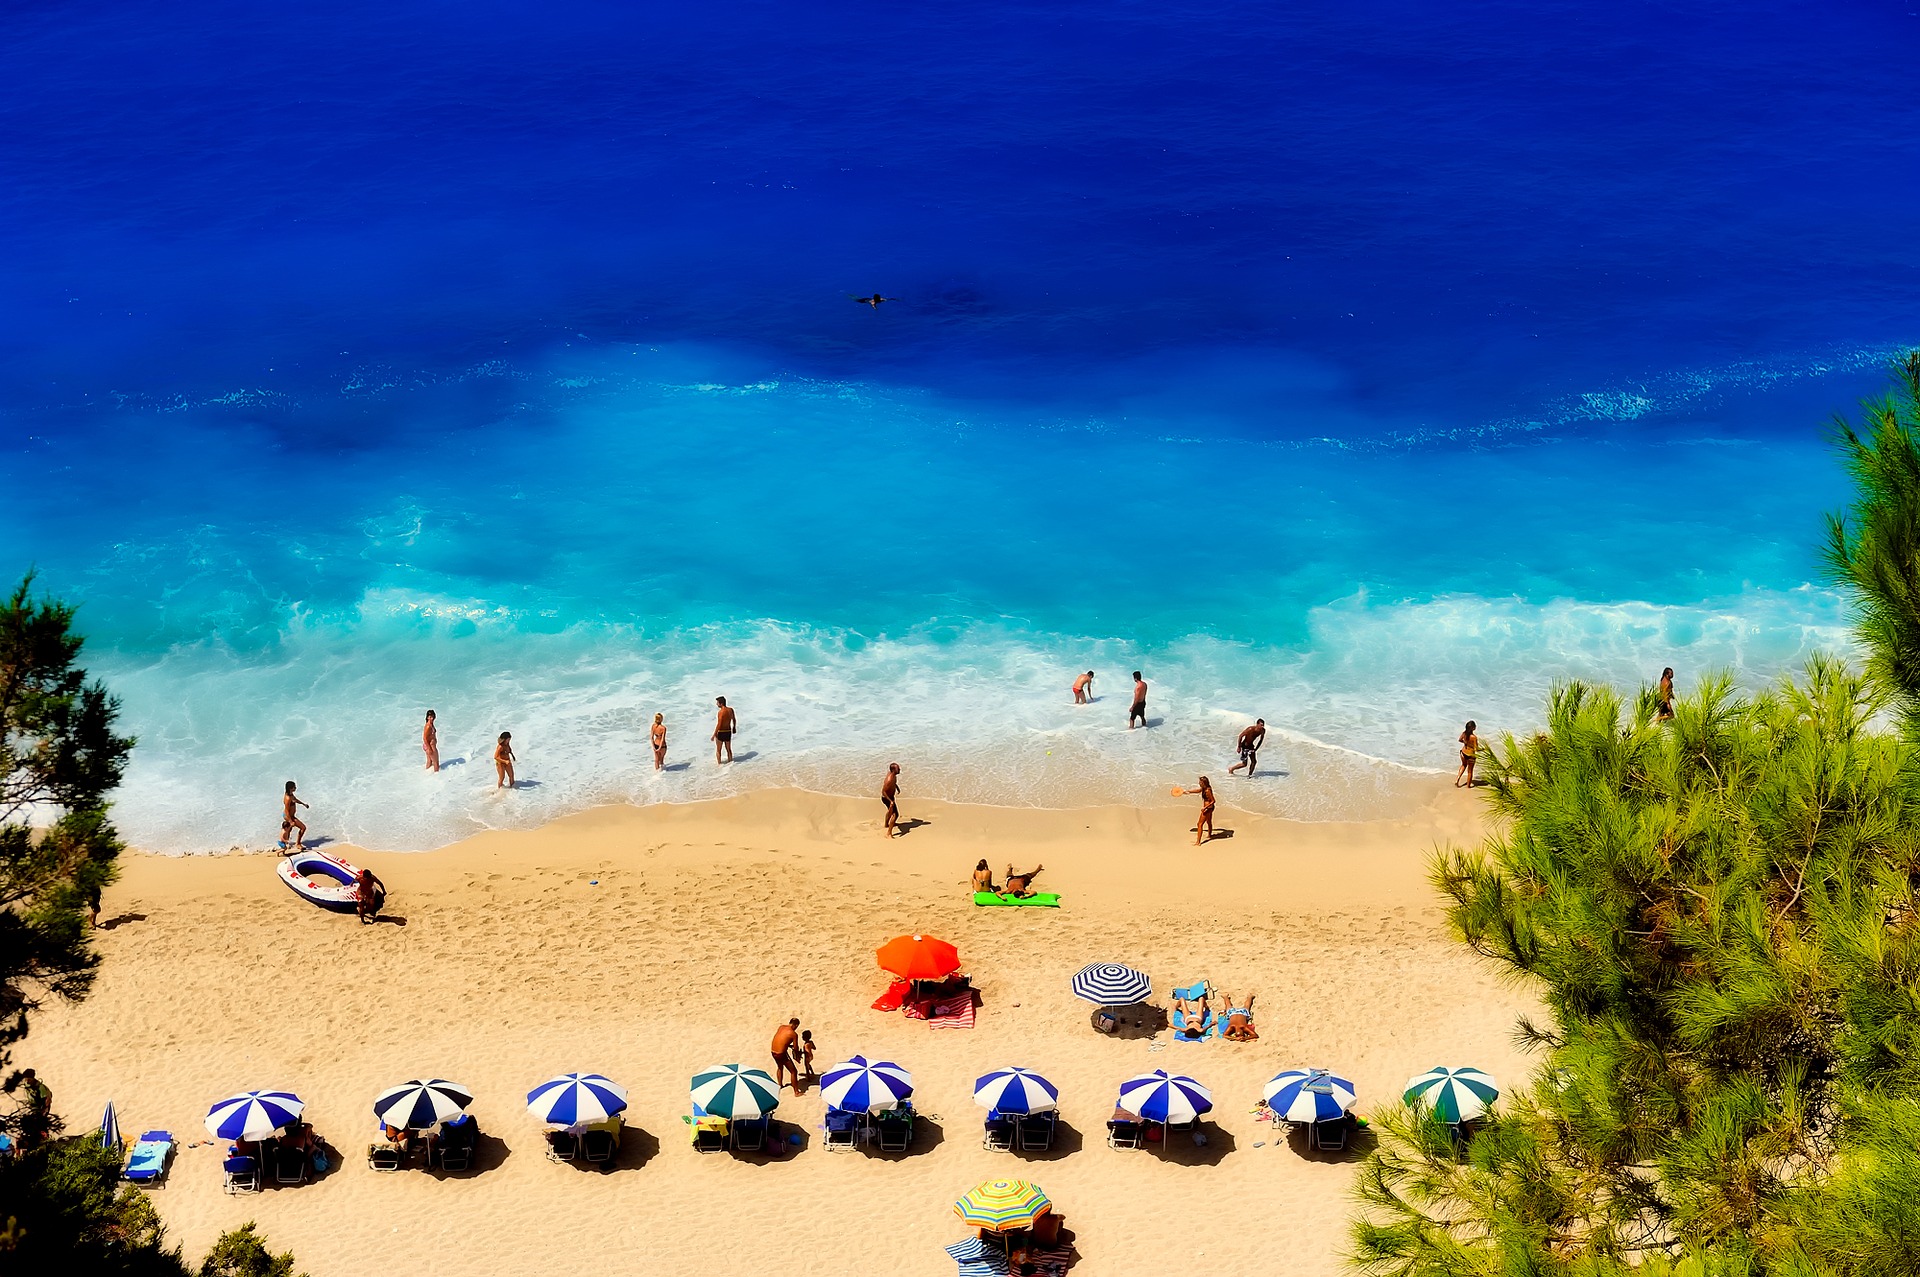 Blick auf einen bevölkerten Strand an dem viele Menschen entsapnnen und schwimmen. Man sieht viele bunte Sonnenschirme.